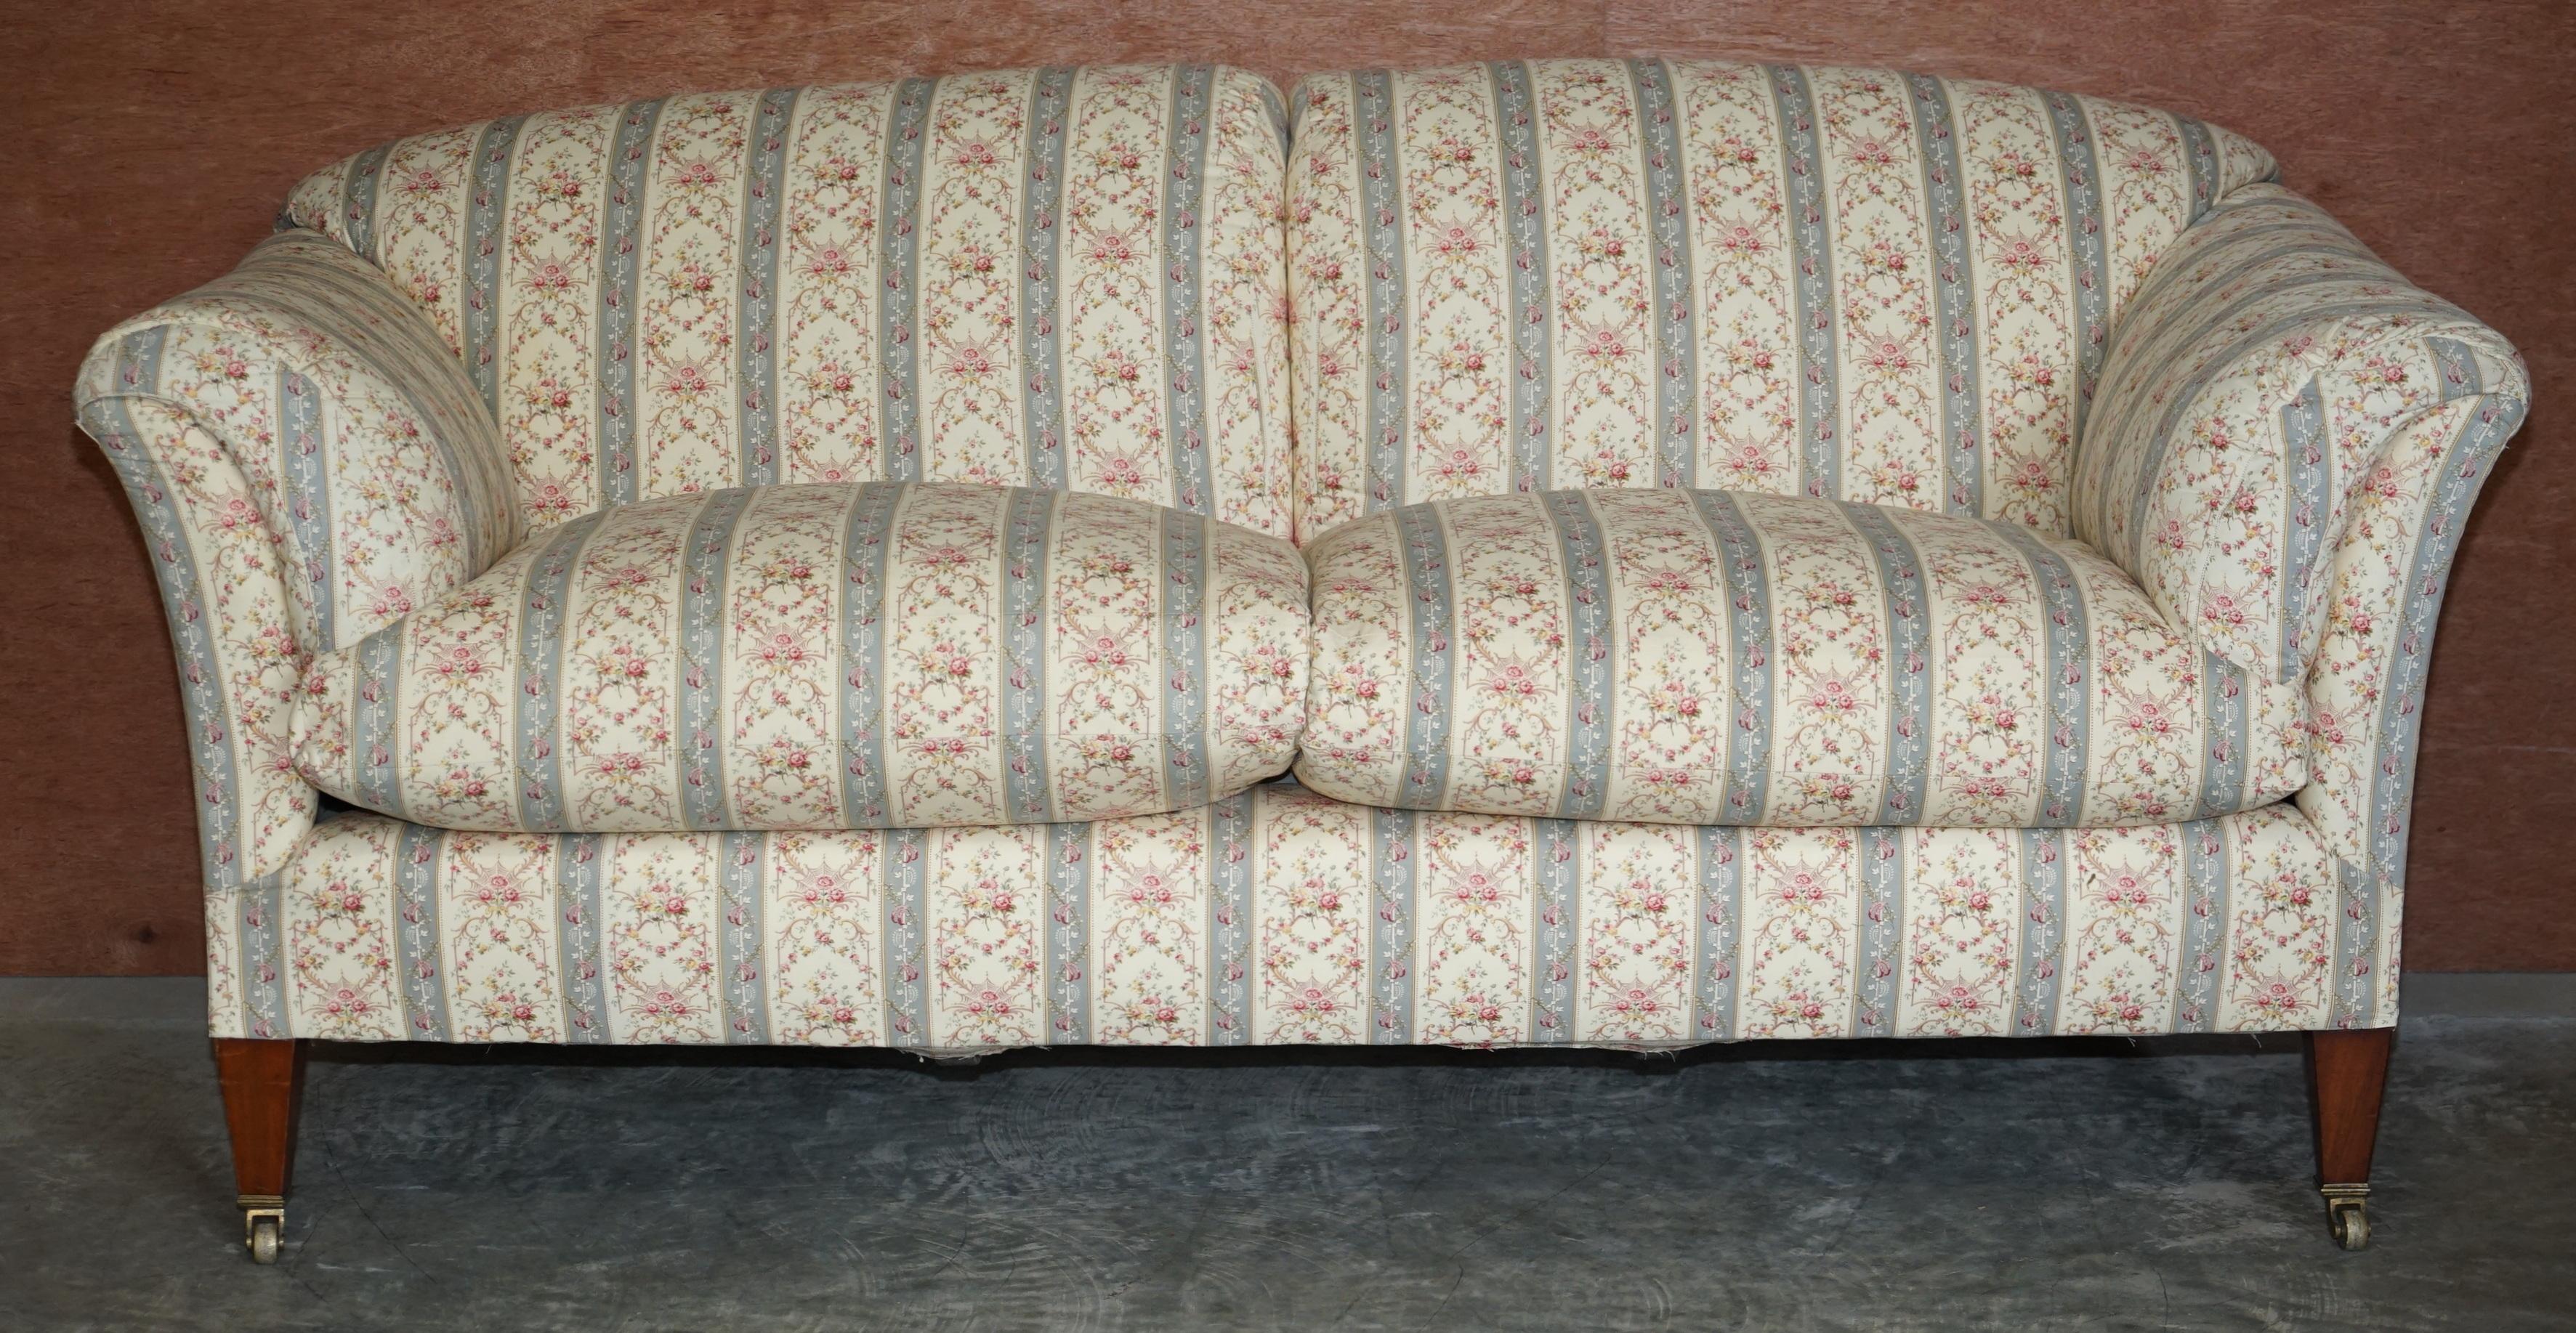 Wir freuen uns, Ihnen dieses atemberaubende, äußerst seltene und originale Howard & Son's Portarlington-Dreisitzer-Sofa (ca. 1910-1920) mit gepolsterten Armlehnen und mit Federn und Fasern gefüllten Kissen anbieten zu können 

Dies ist einfach